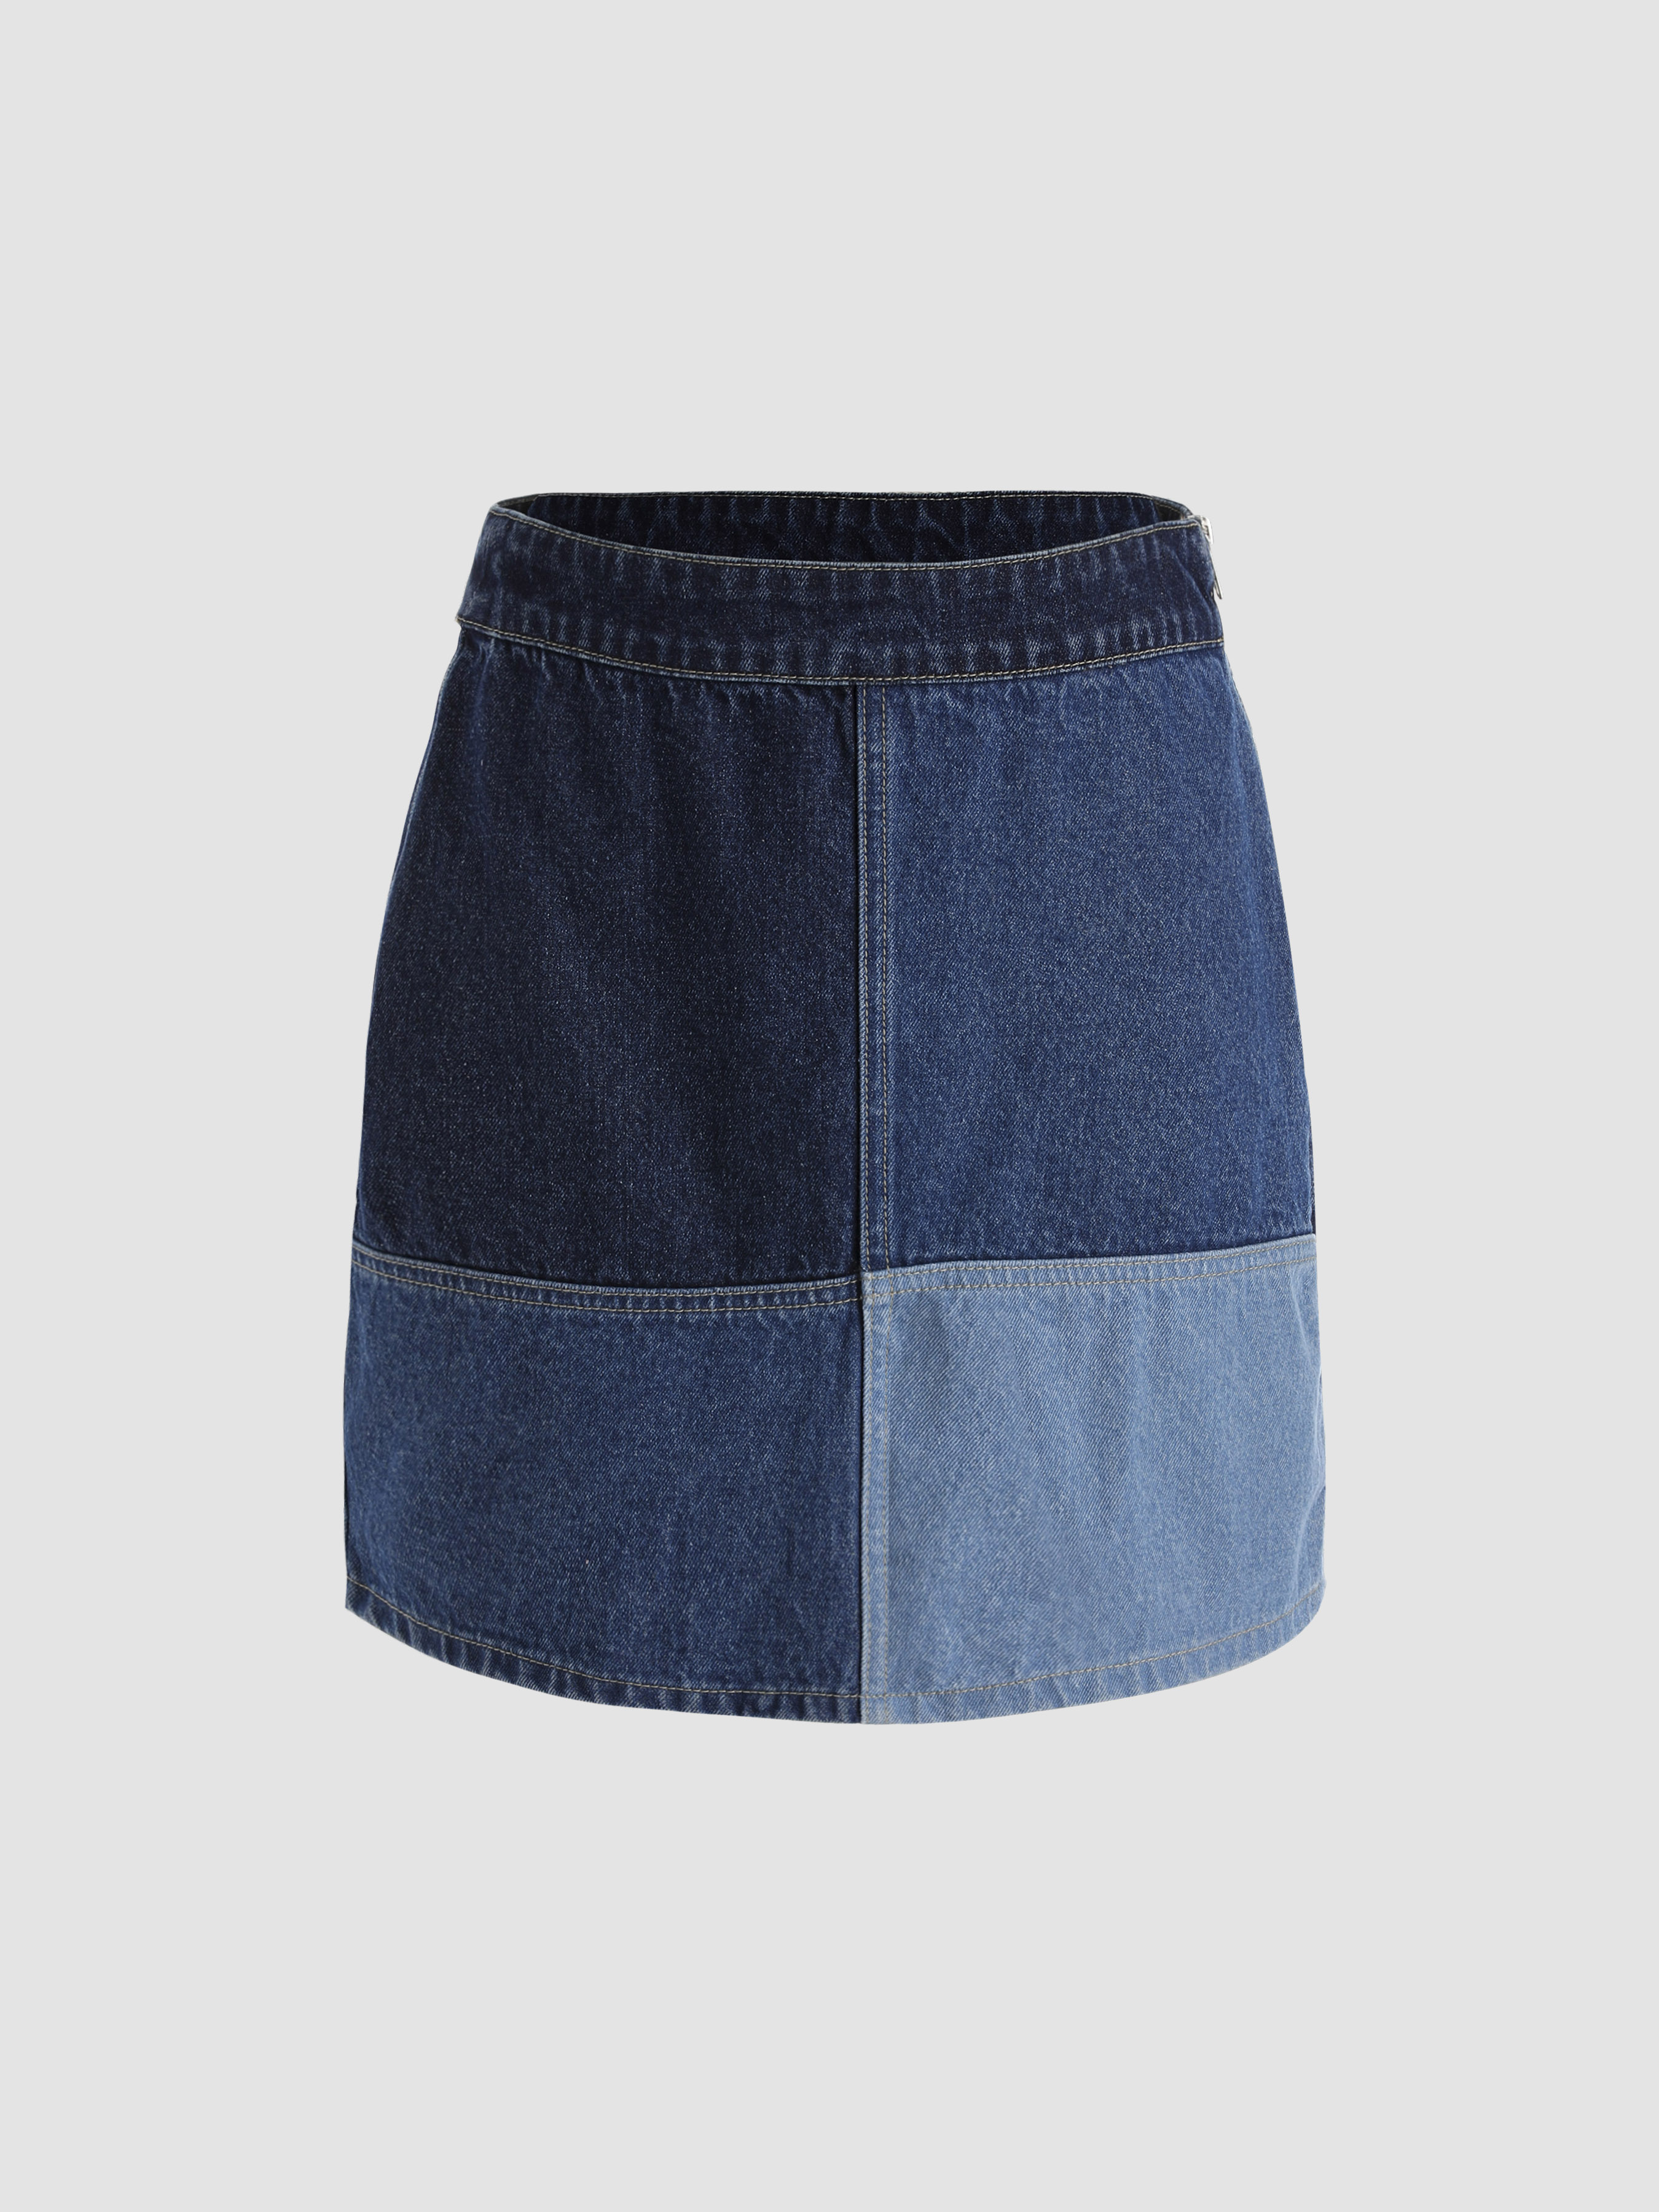 Full Zip Sandbridge Skirt - Hey June Handmade